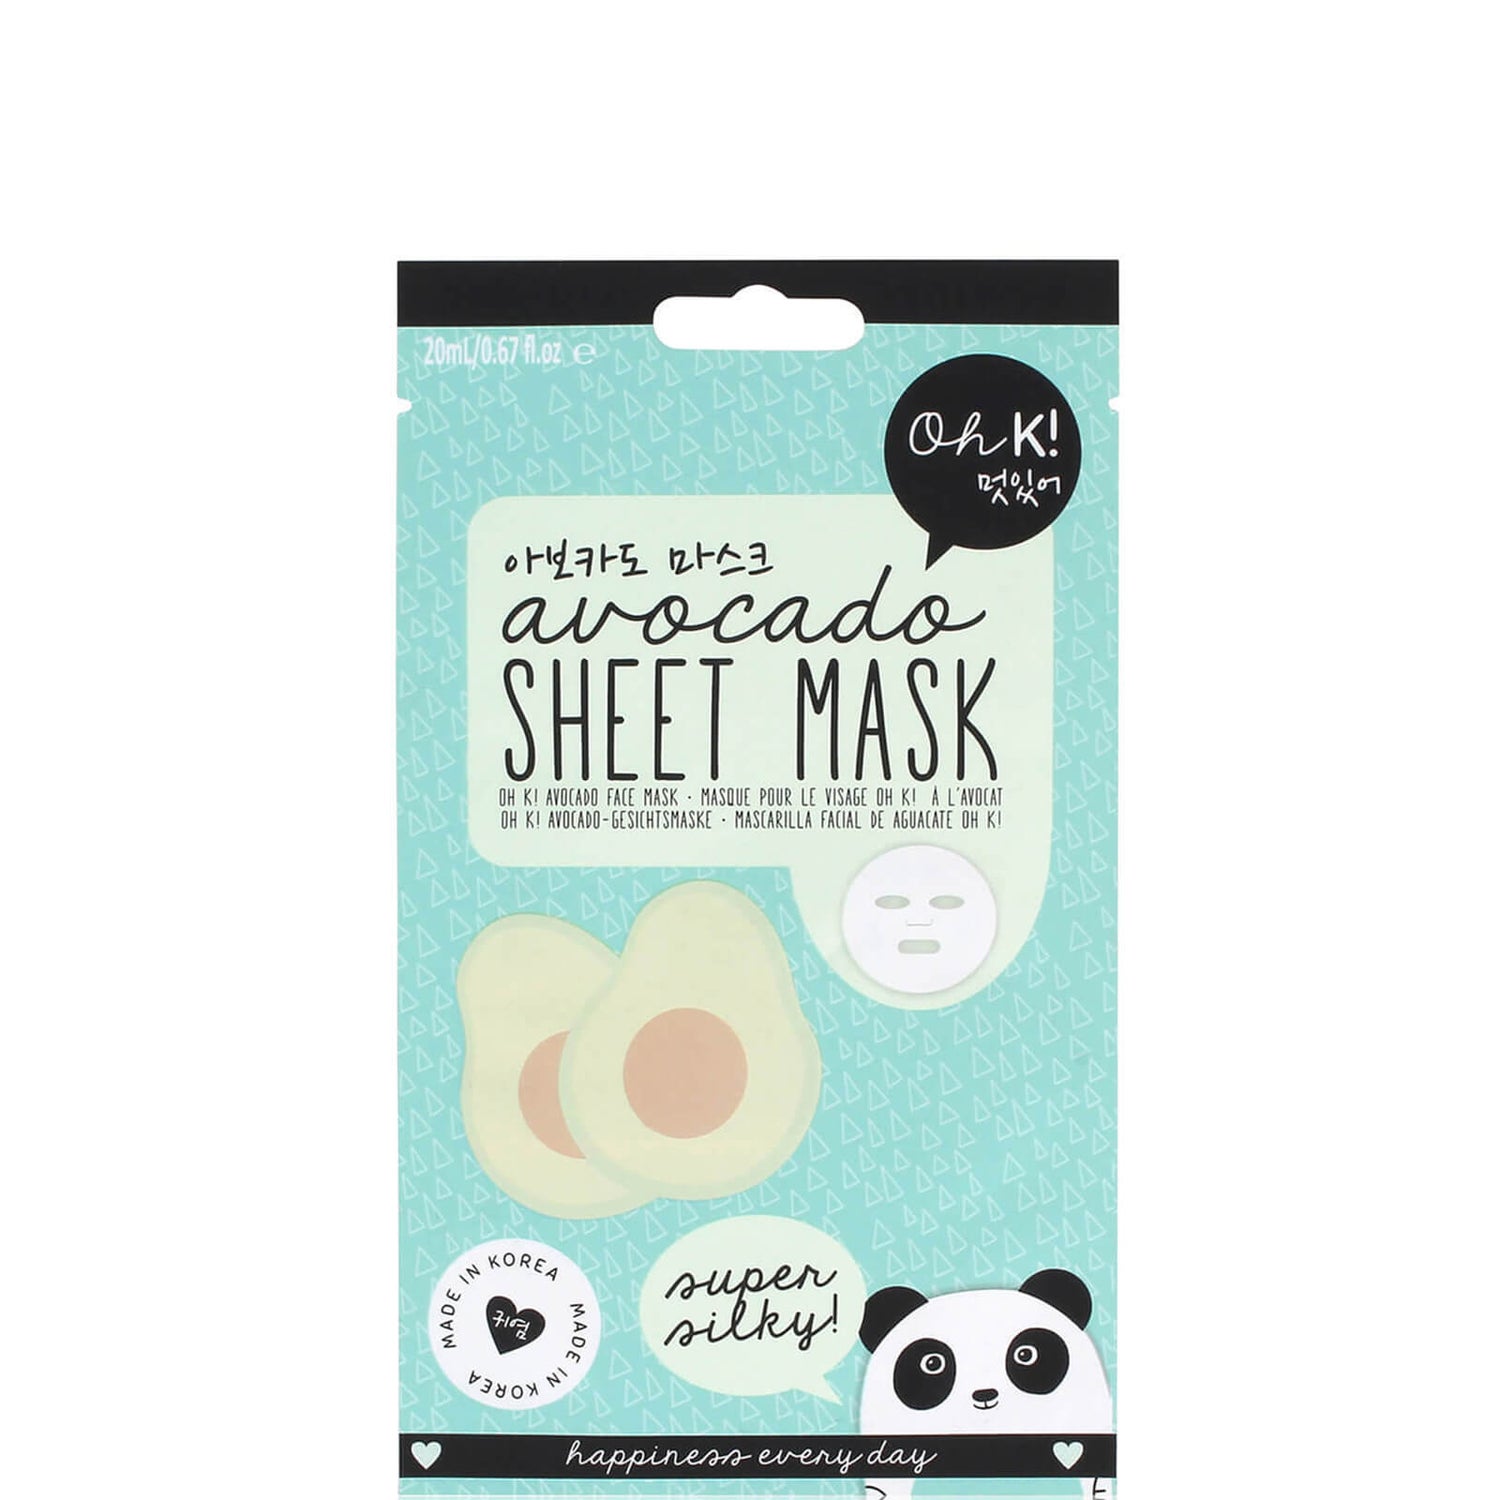 Oh K! Avocado Sheet Mask -kasvonaamio 23ml